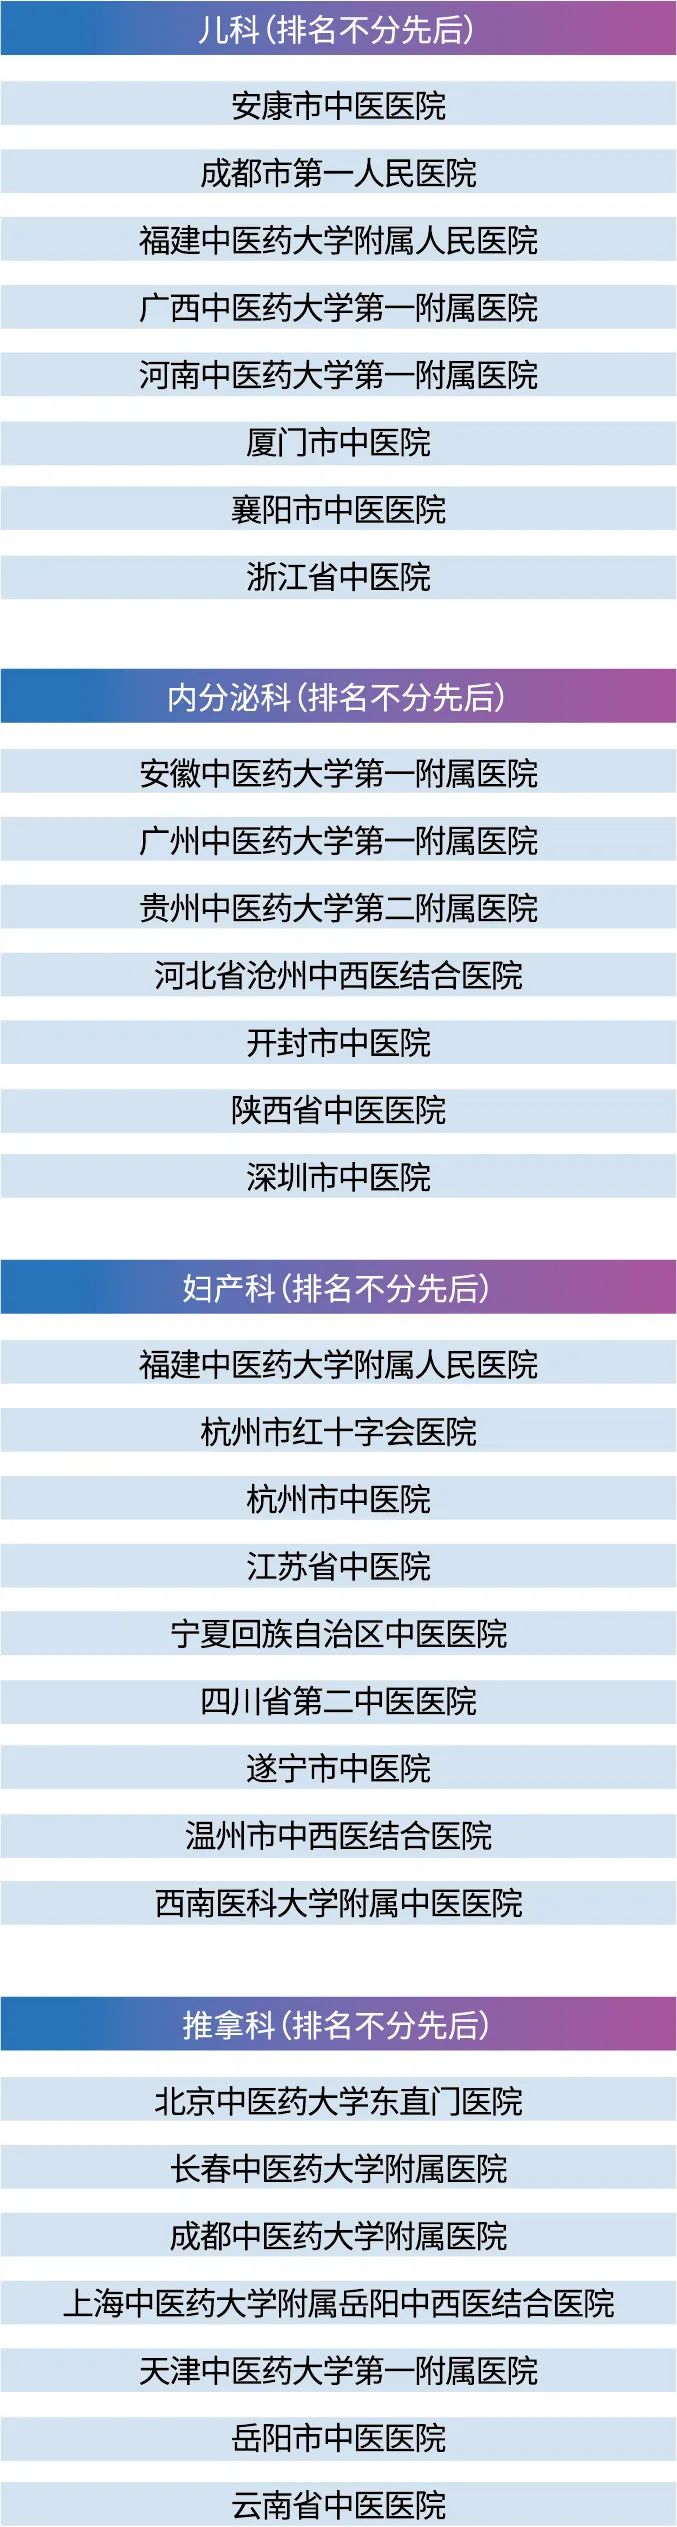 2020年中国中医医院最佳专科排行榜